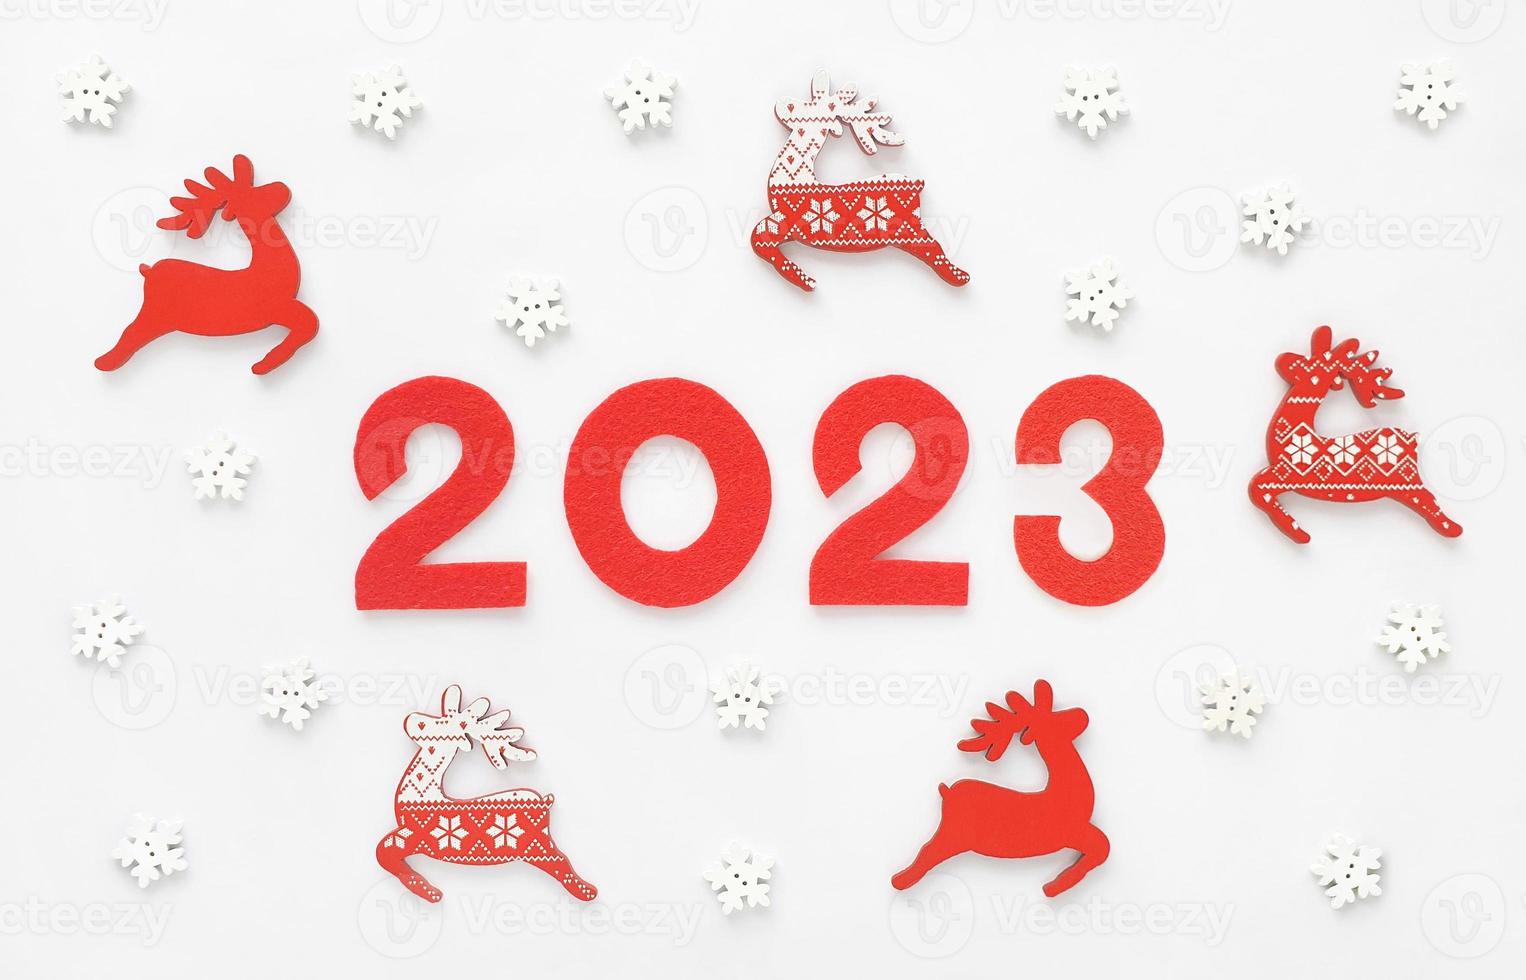 cartão de ano novo 2023 com renas de Papai Noel vermelhas e flocos de neve brancos. decorações de madeira e números de ano de feltro 2 0 2 3. foto